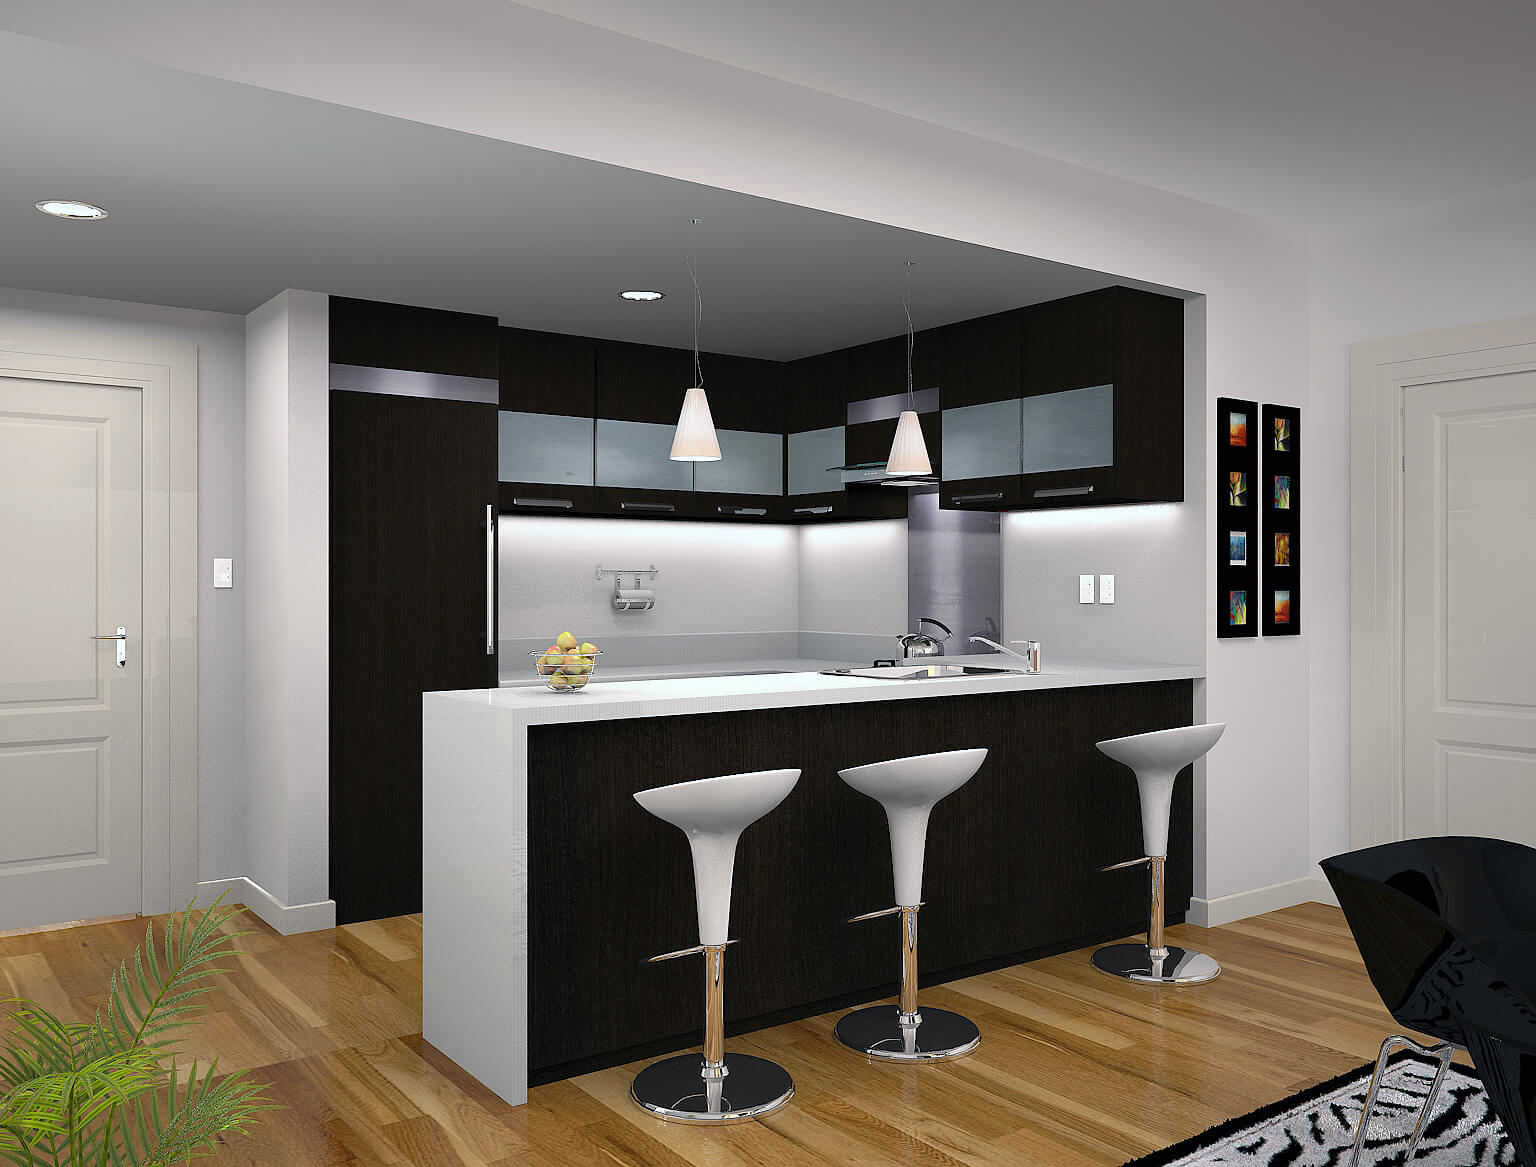 kitchen design idea for condos